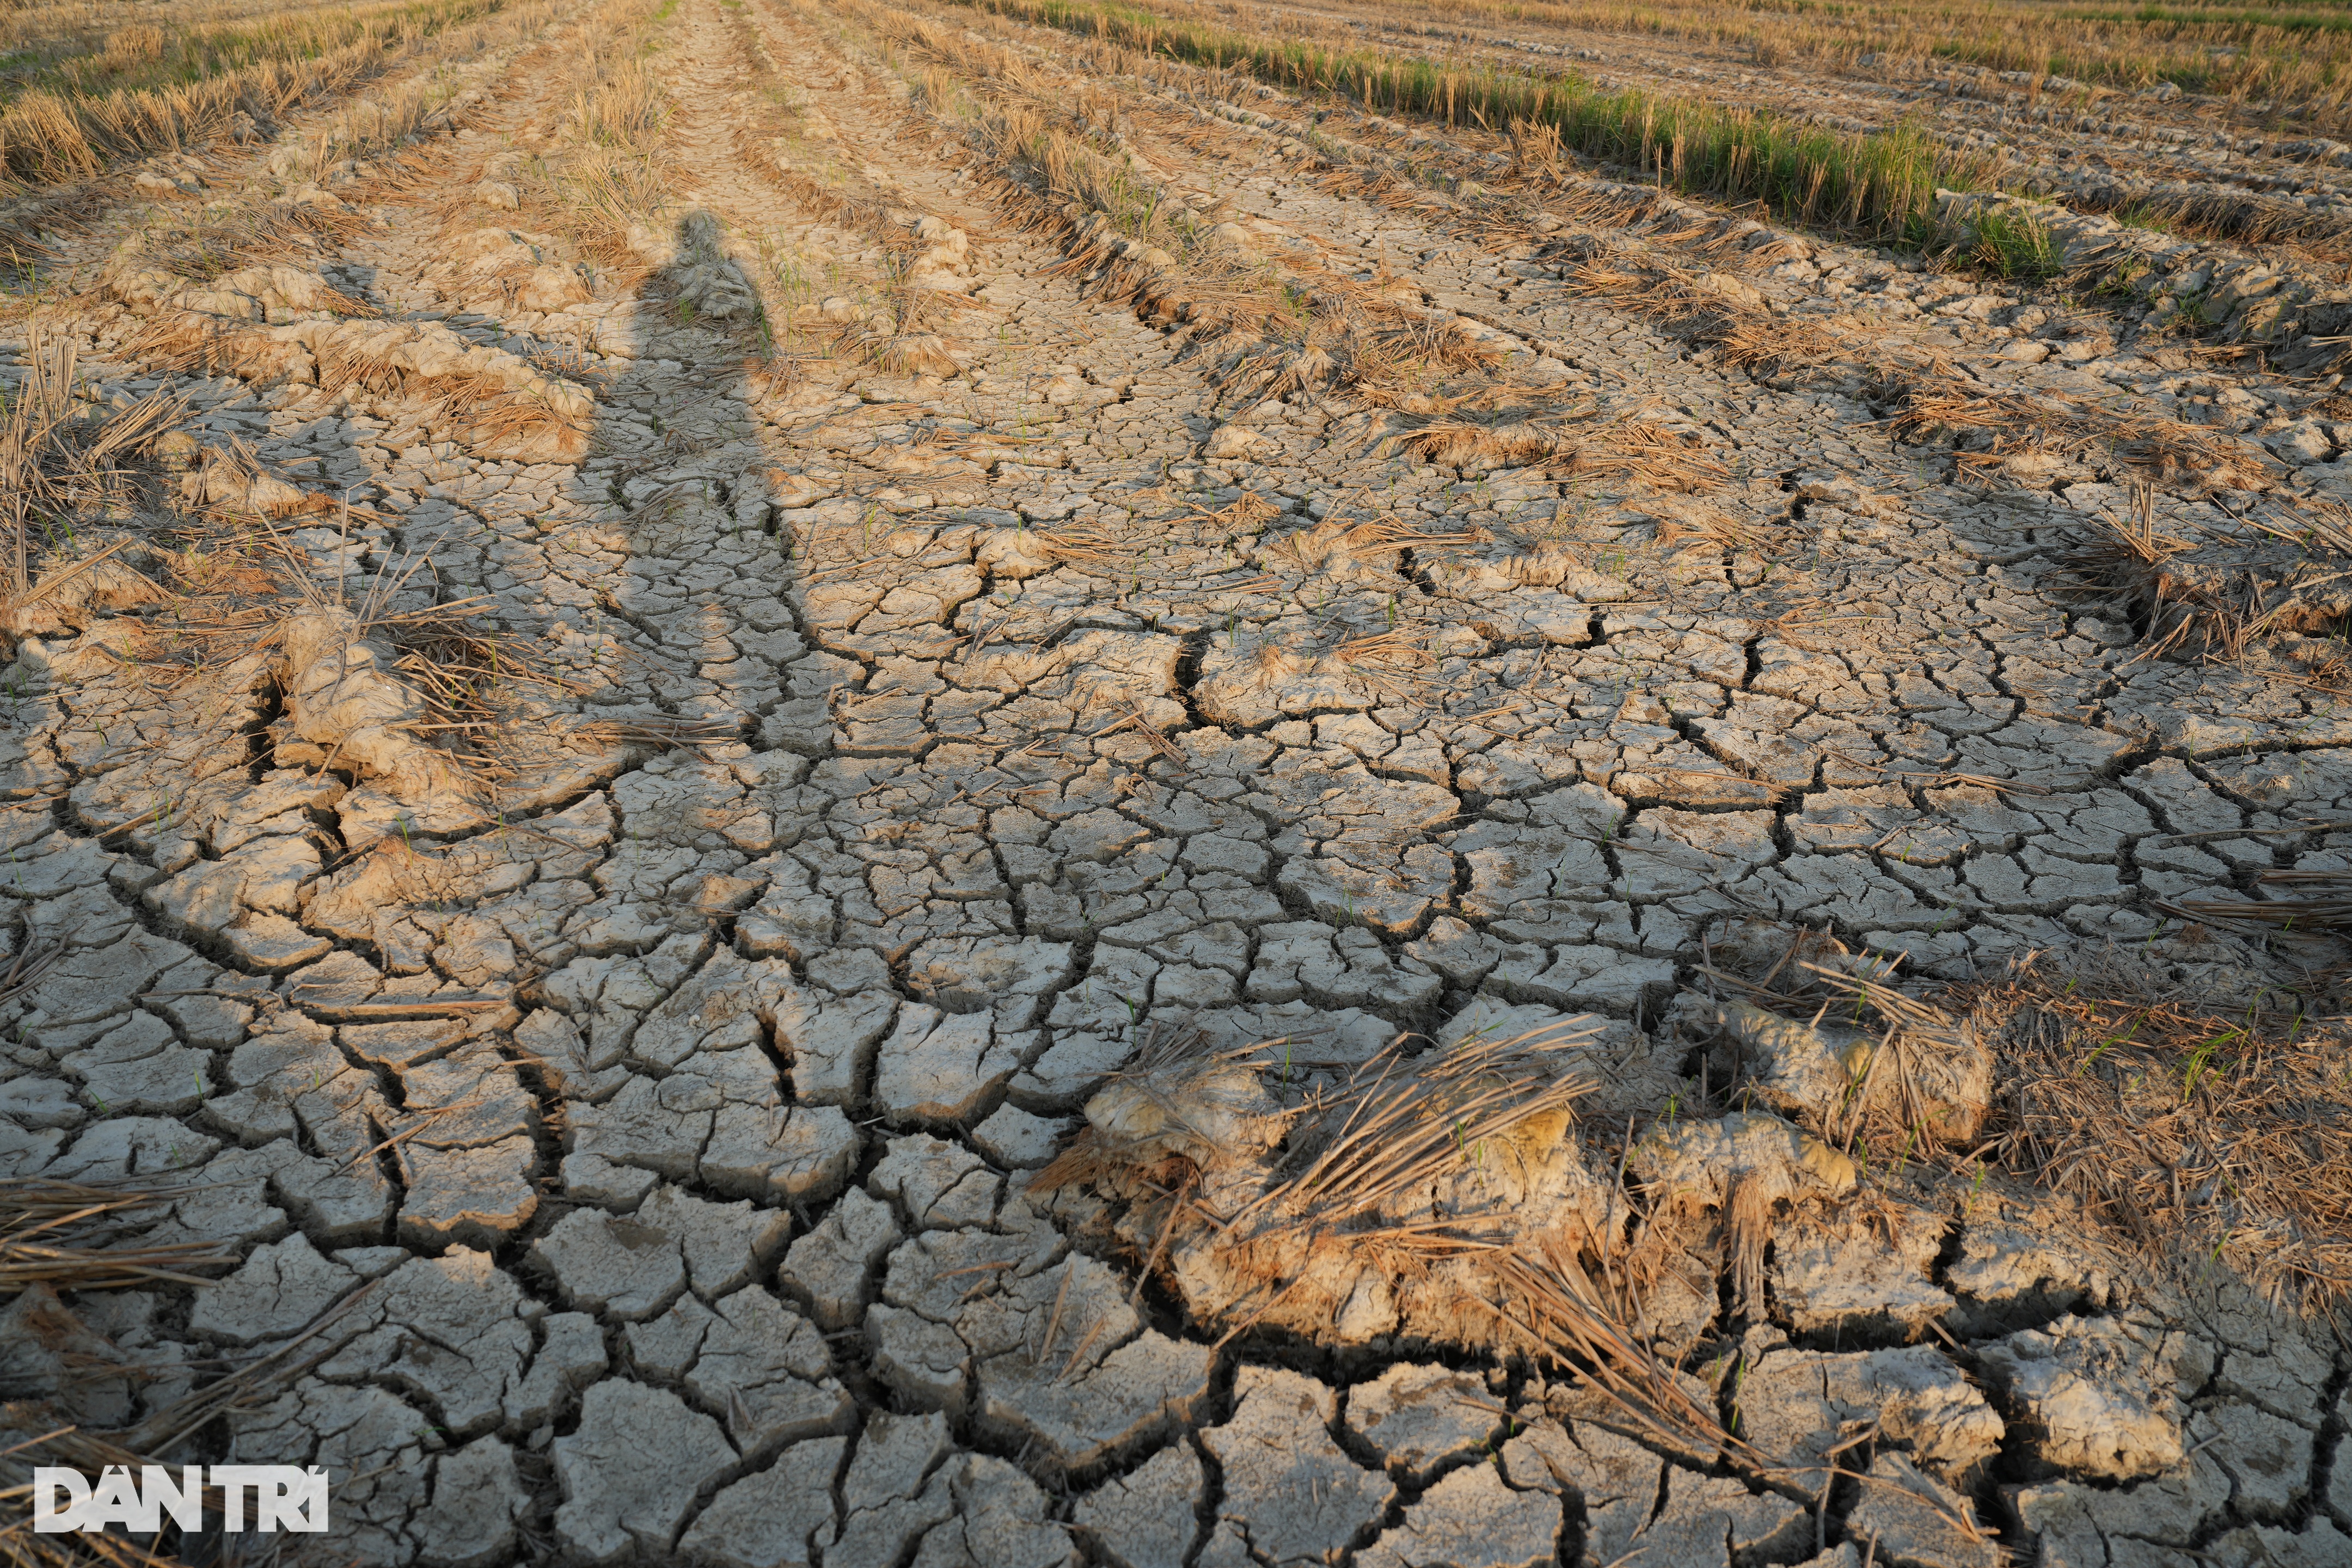 Mùa hạn mặn kỳ lạ: Nơi ruộng đồng khô khốc, chỗ đường hóa thành sông - 1